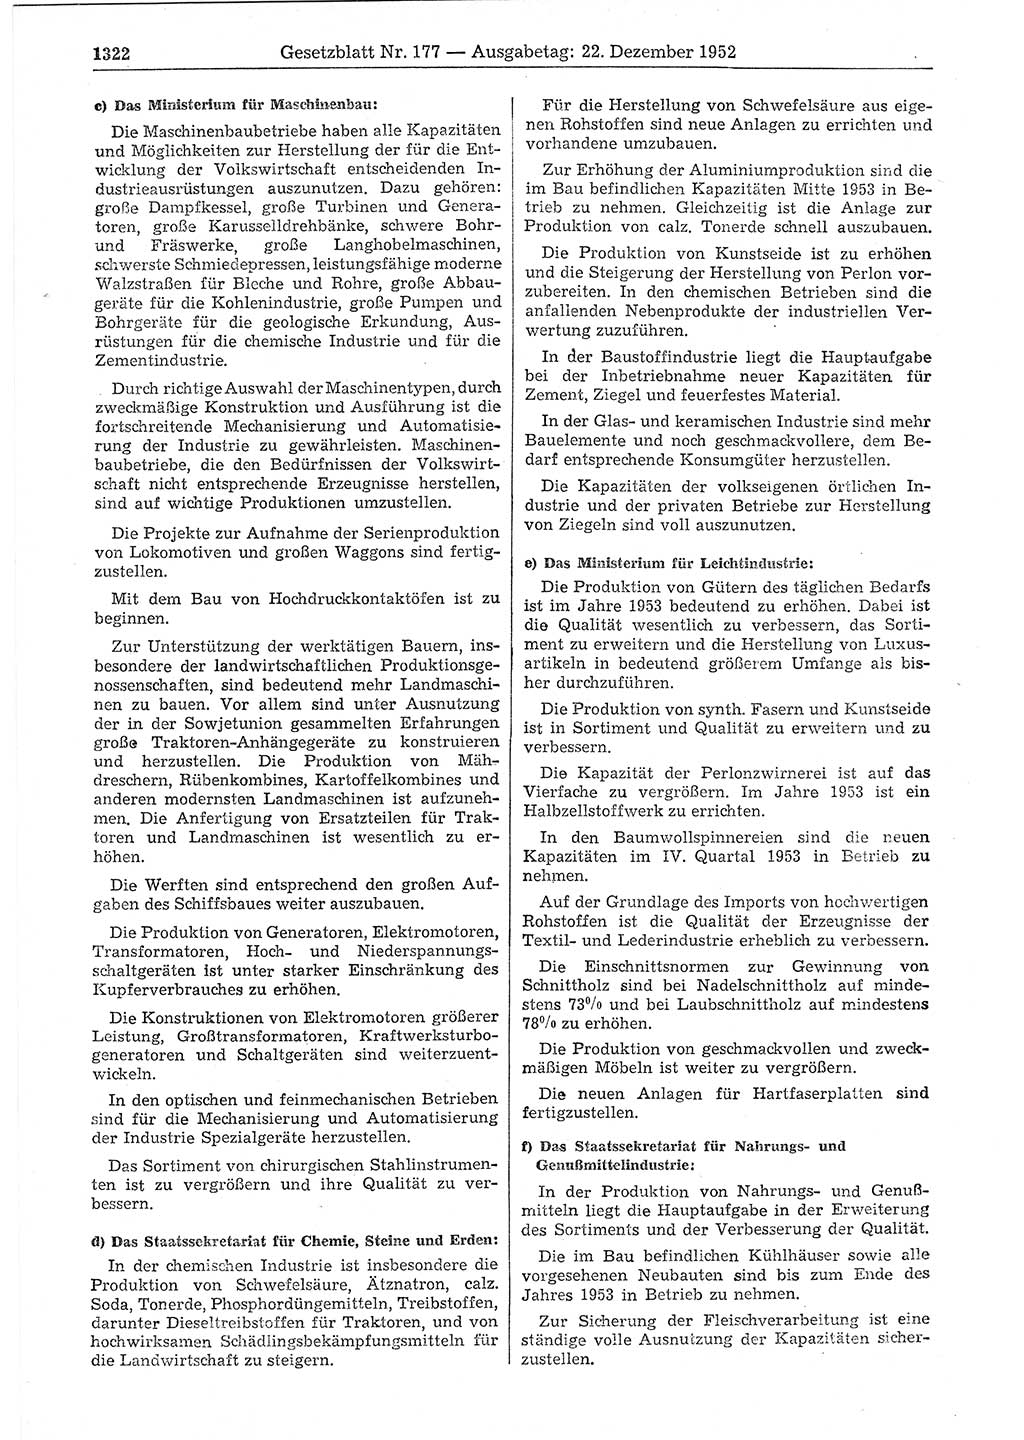 Gesetzblatt (GBl.) der Deutschen Demokratischen Republik (DDR) 1952, Seite 1322 (GBl. DDR 1952, S. 1322)